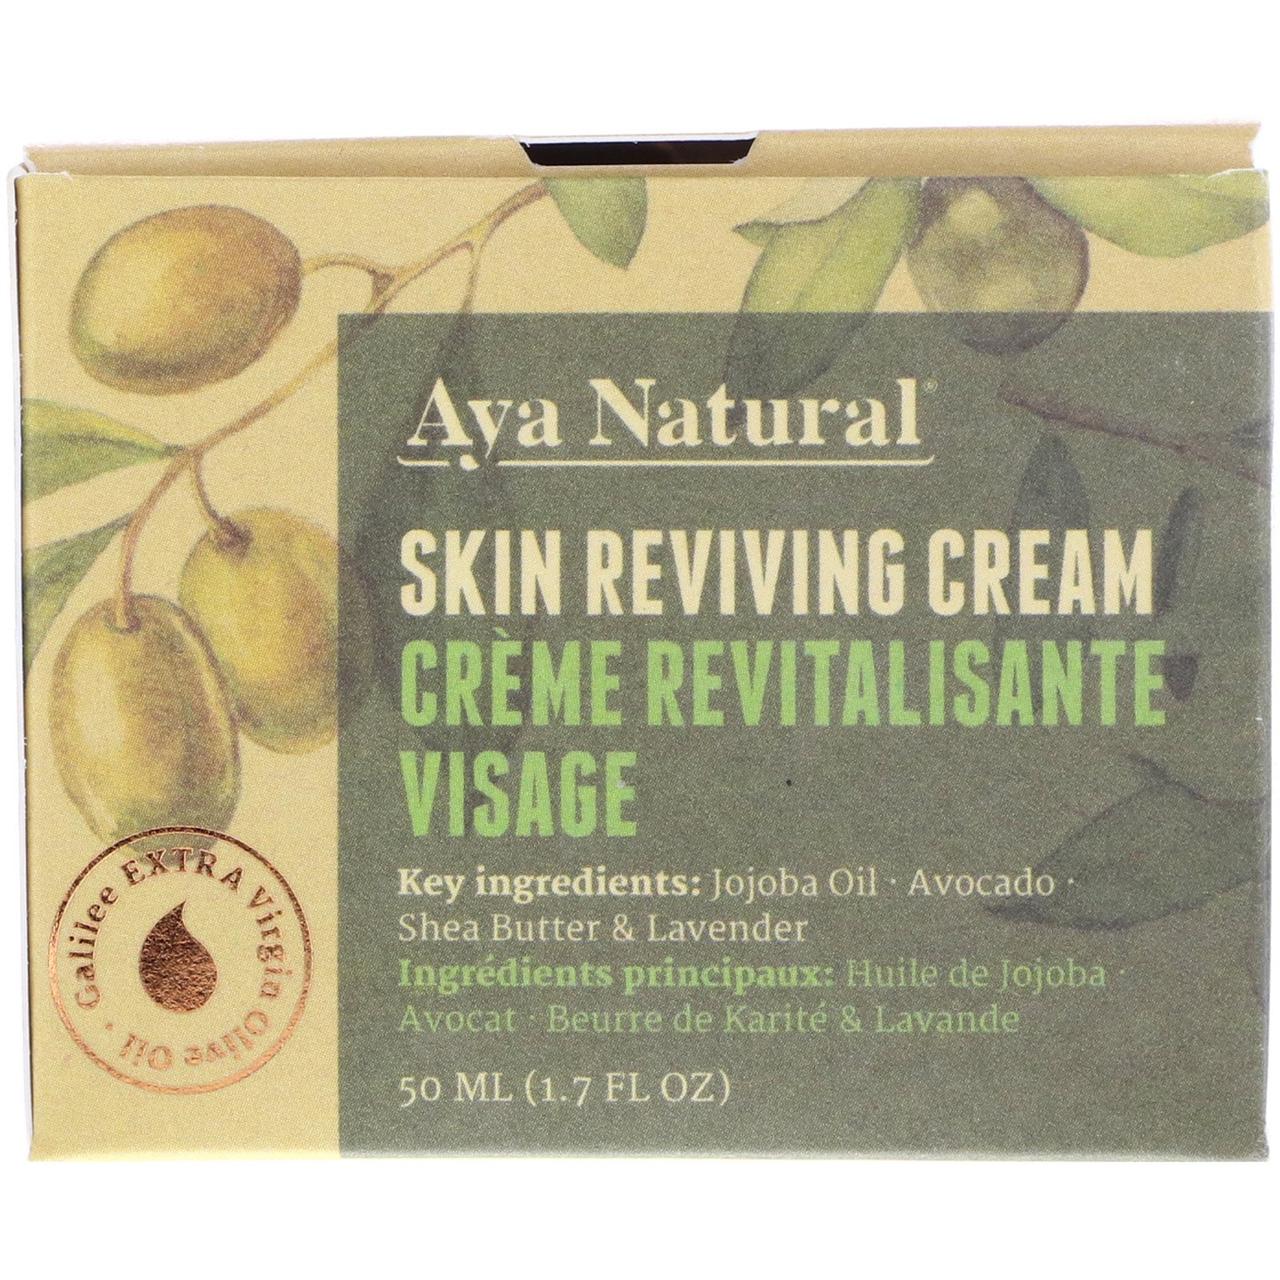 Aya Natural Skin Reviving Cream, 1.7 fl oz (50 ml), фото 1